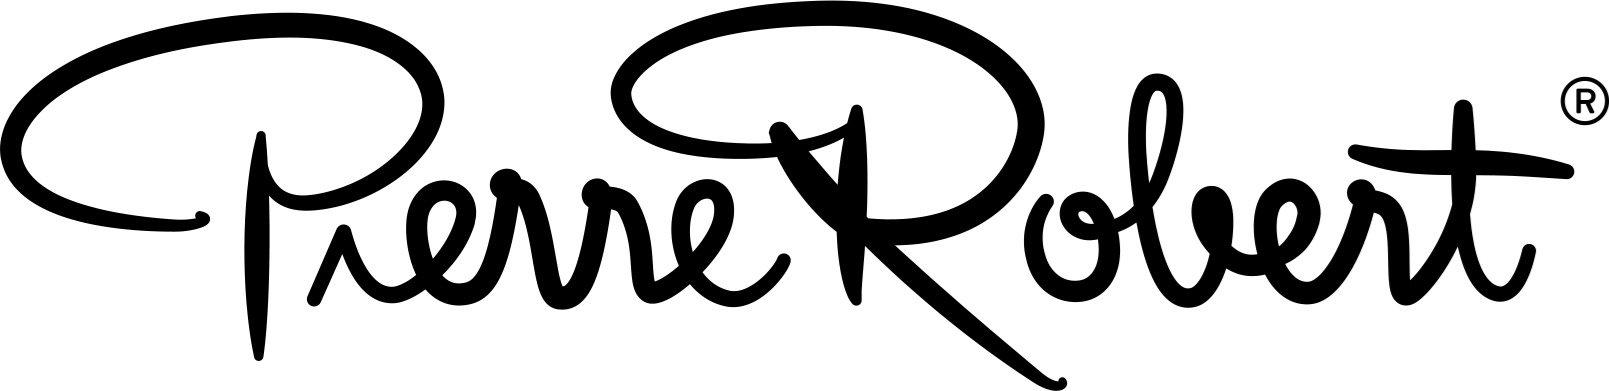 Logo of Pierre Robert